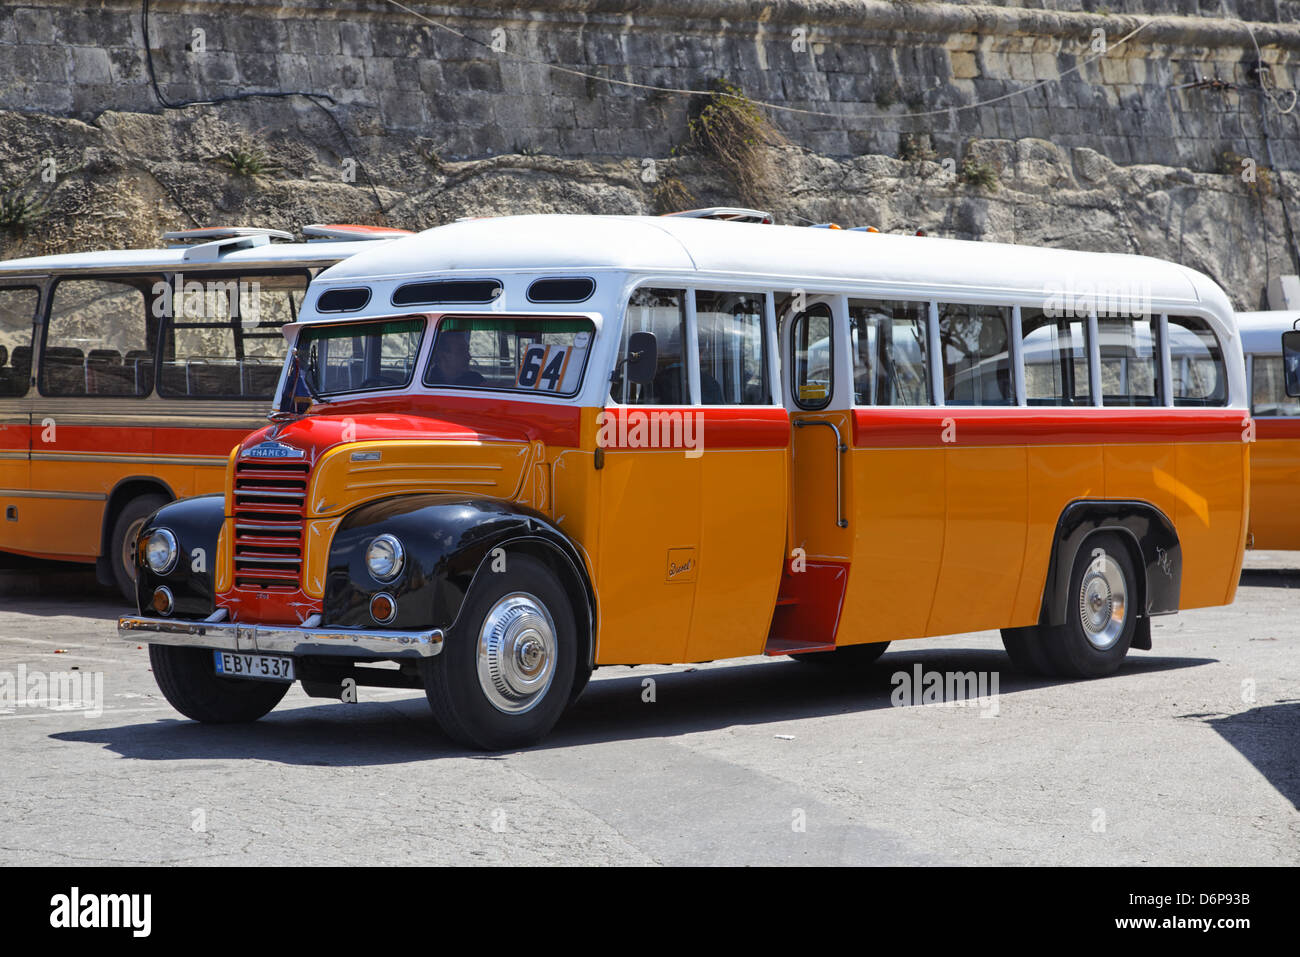 Malta, Valletta, Oldtimer Bus friedlich, Harmonisch, Stock Photo